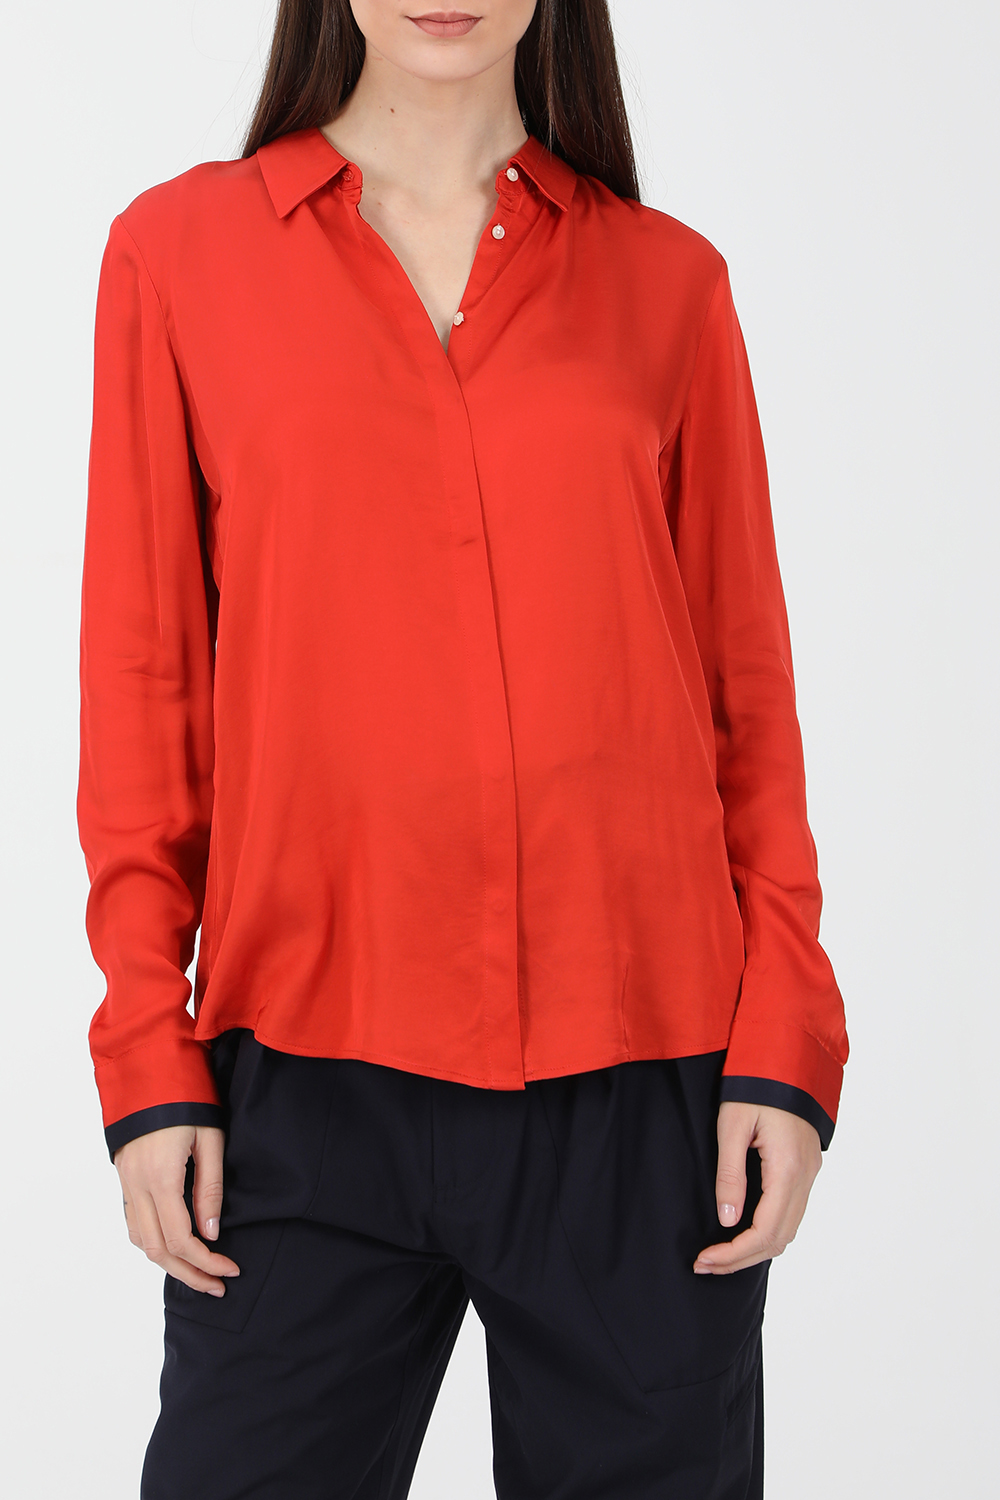 SCOTCH & SODA – Γυναικείο πουκάμισο SCOTCH & SODA κόκκινο 1821038.0-00O3